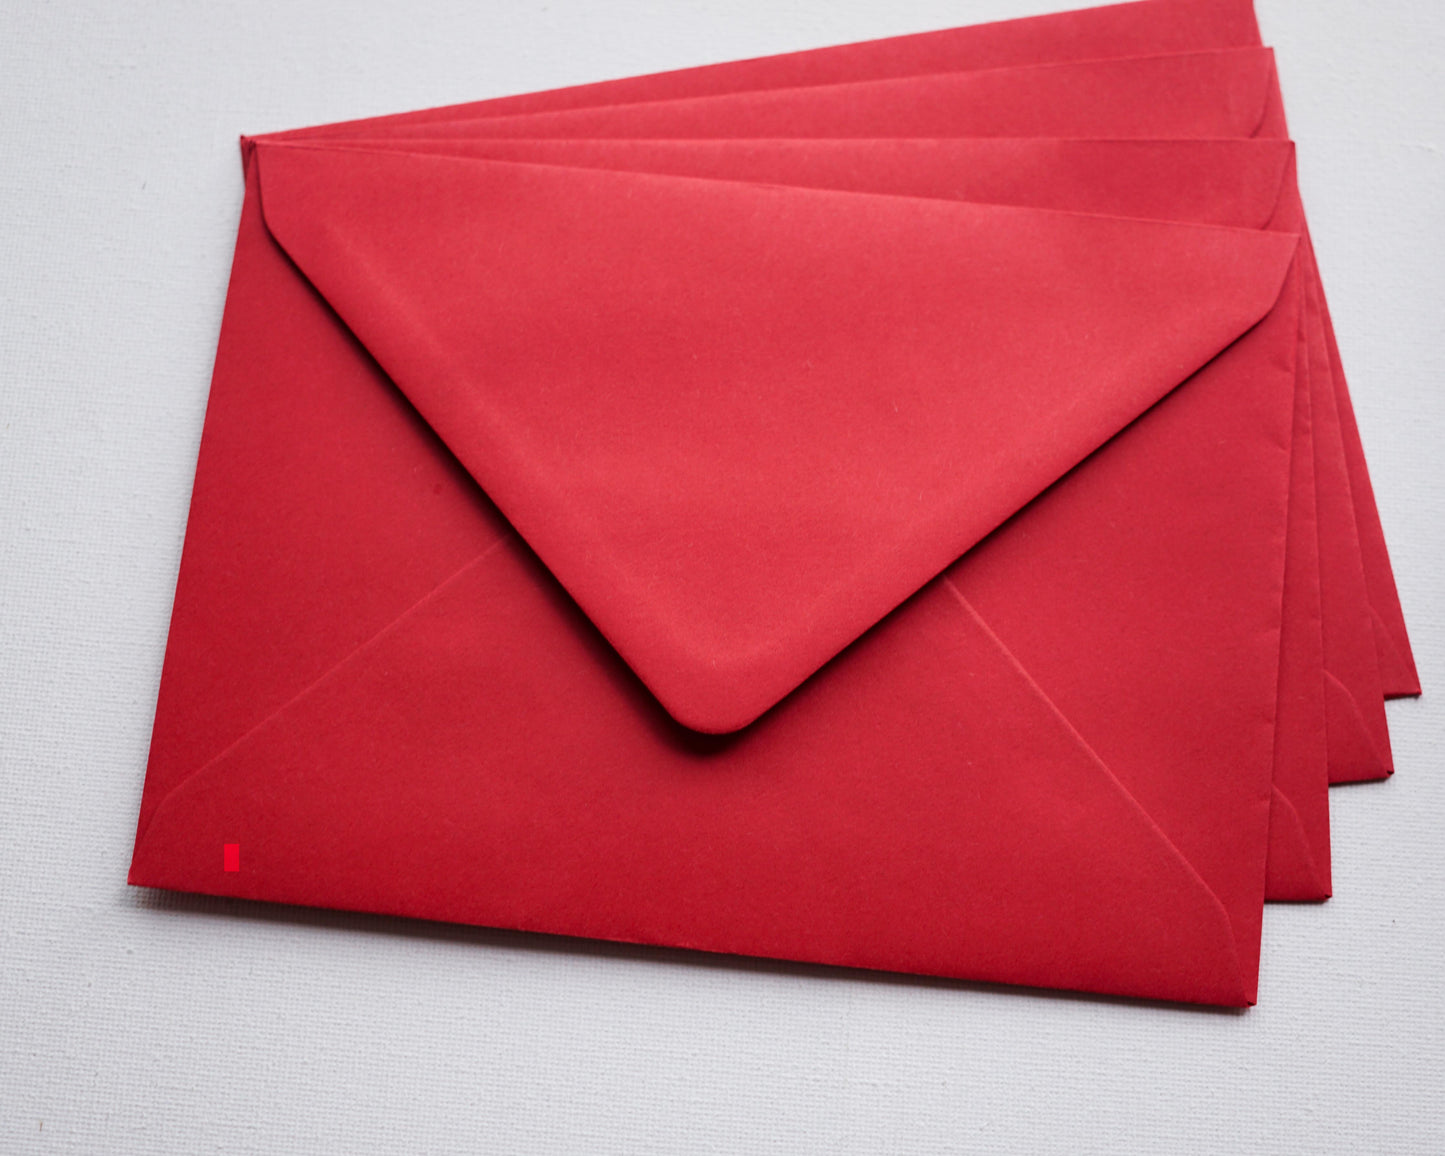 Vörös díszboríték i8 - 13,3 x 18,4 cm.-Boríték-i8 - 13.3 x 18.4 cm -boríték, piros boríték - plicuri colorate - plicuri speciale -Erdélyi Esküvői Meghívók